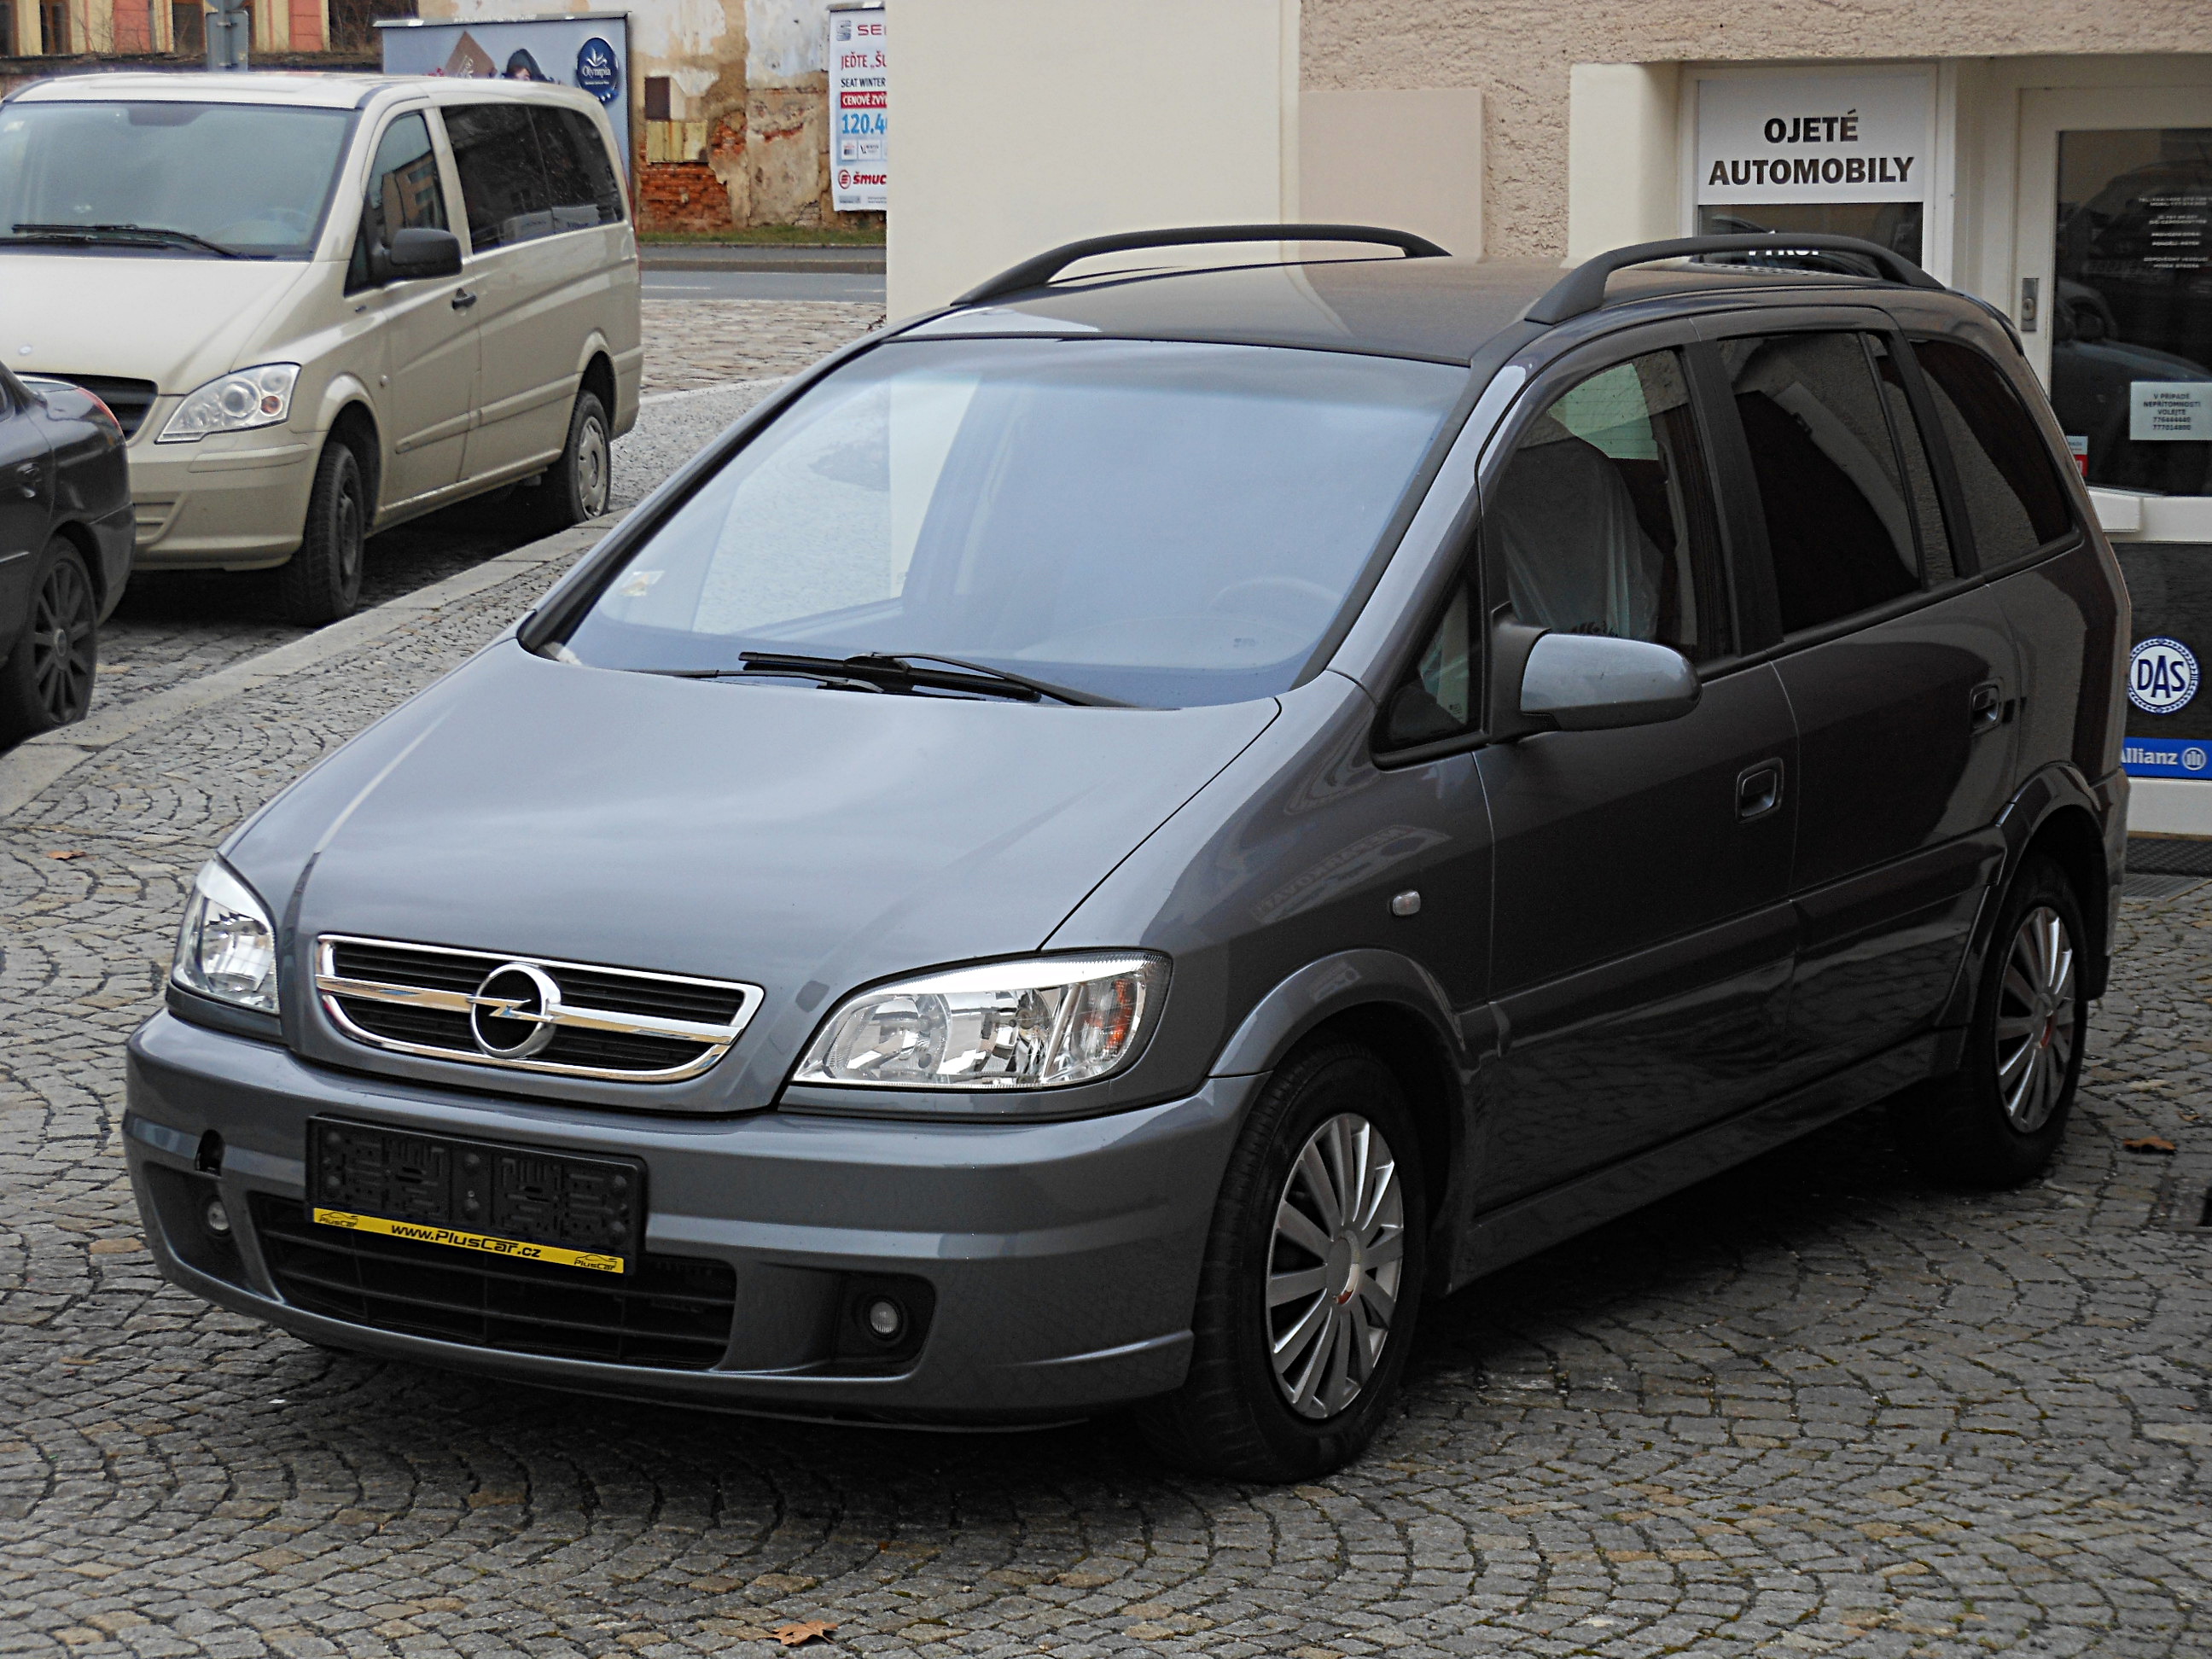 Opel Zafira OPC 002